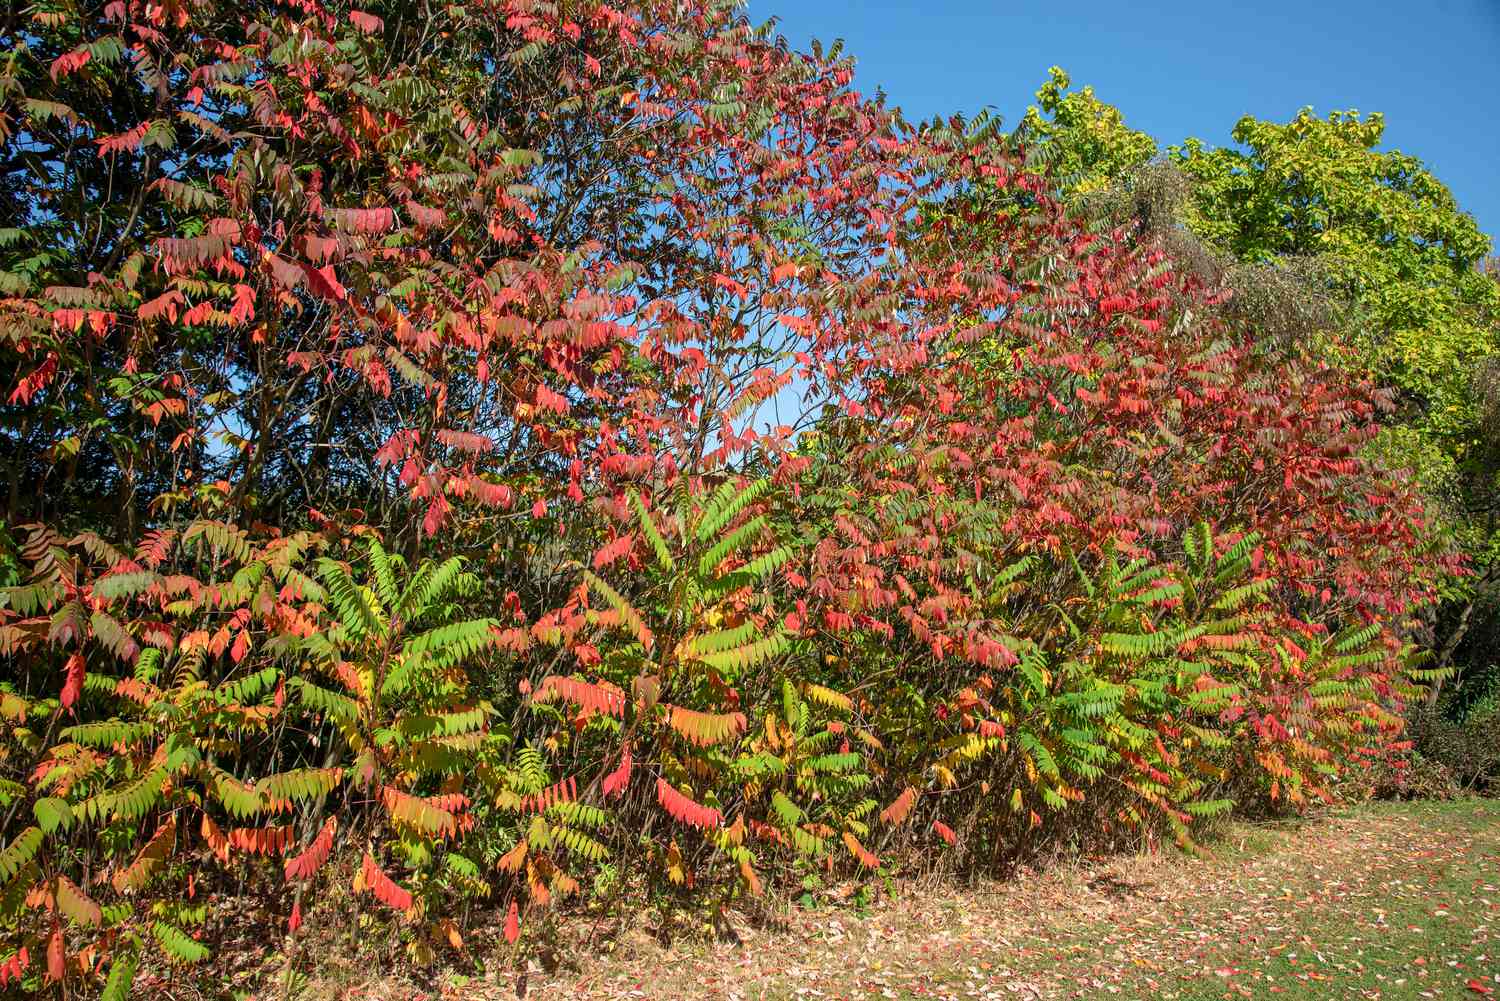 Hirschhornsumachstrauch mit hohen Ästen, die eine Wand aus grünen, roten und gelben Blättern bilden